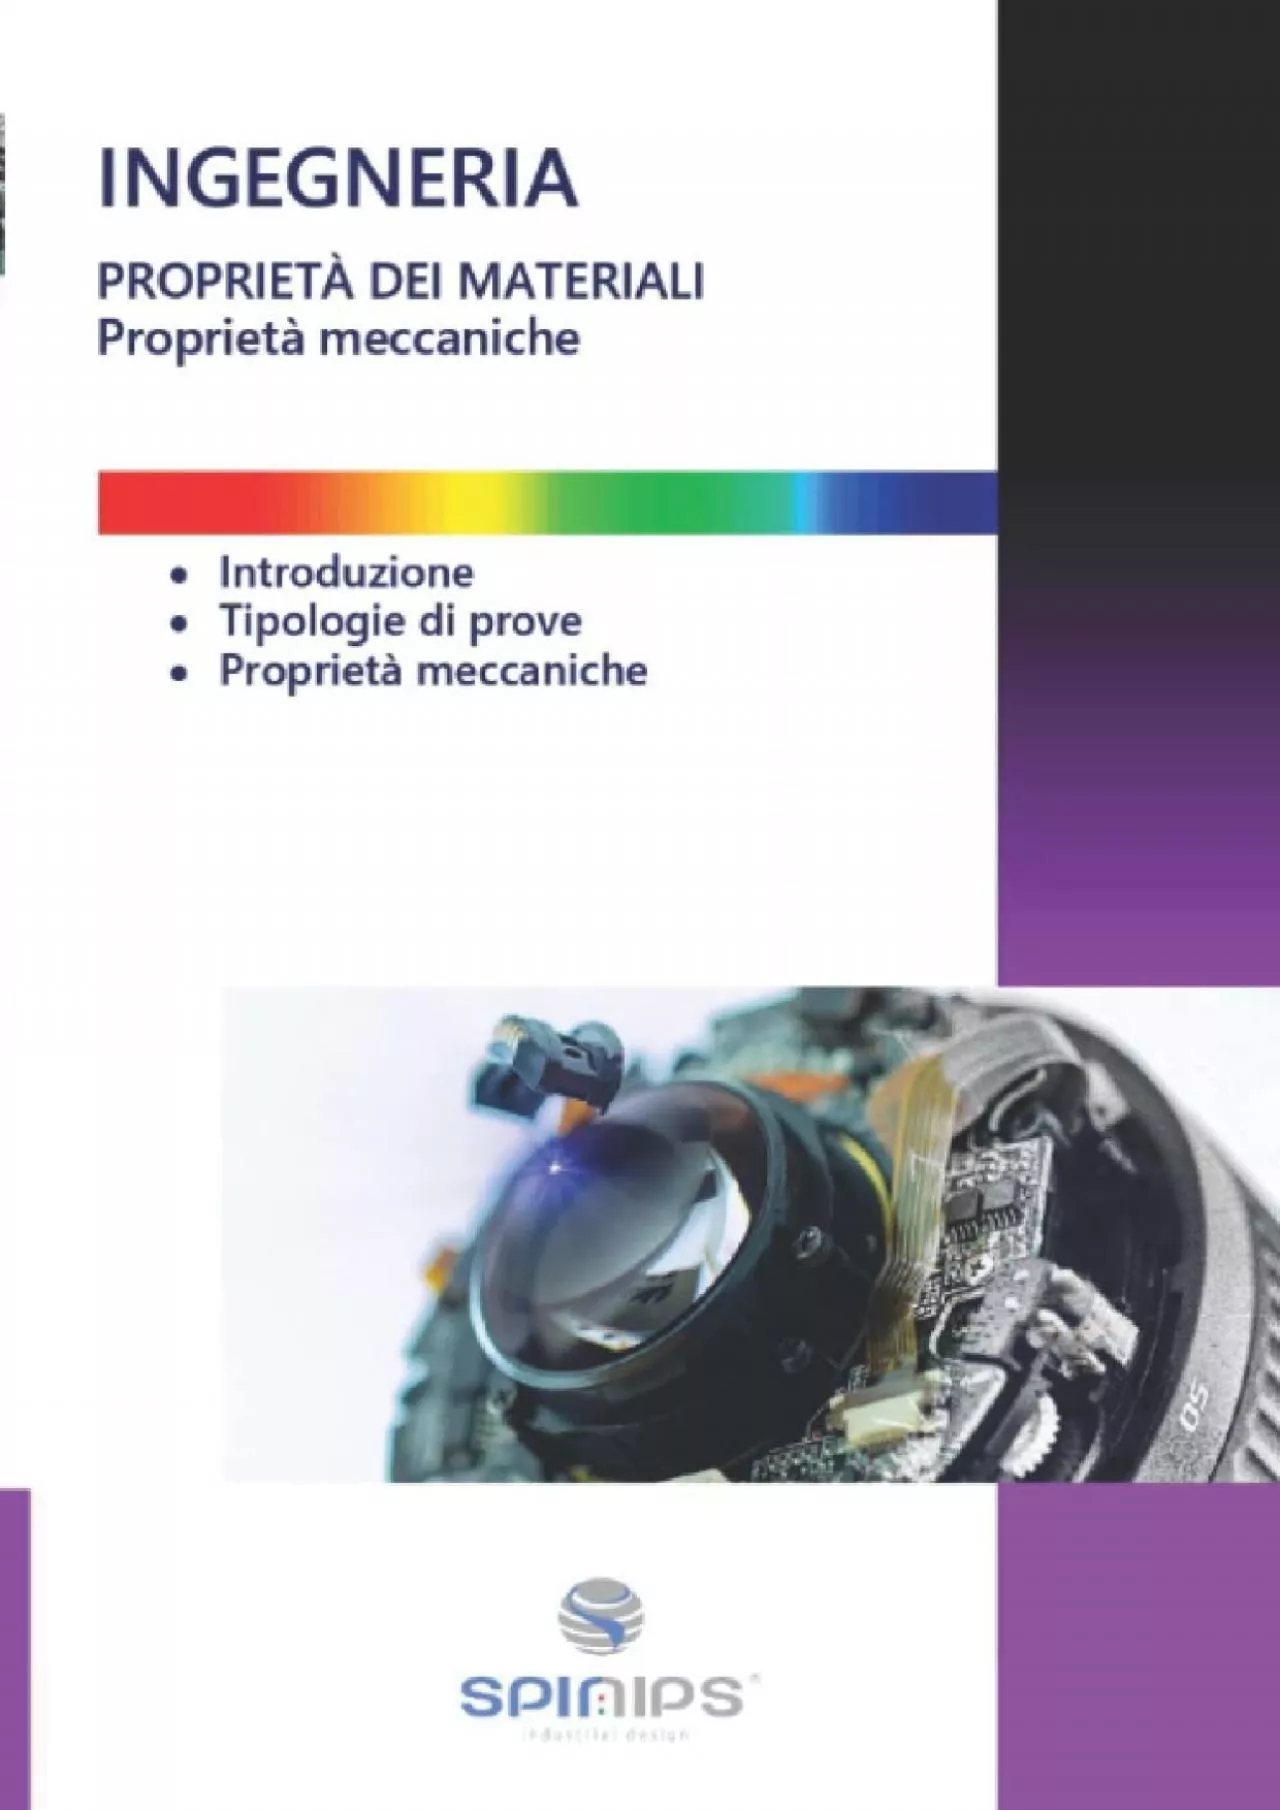 [READ] PROPRIETÀ DEI MATERIALI: Proprietà meccaniche INGEGNERIA E TECNOLOGIA Italian